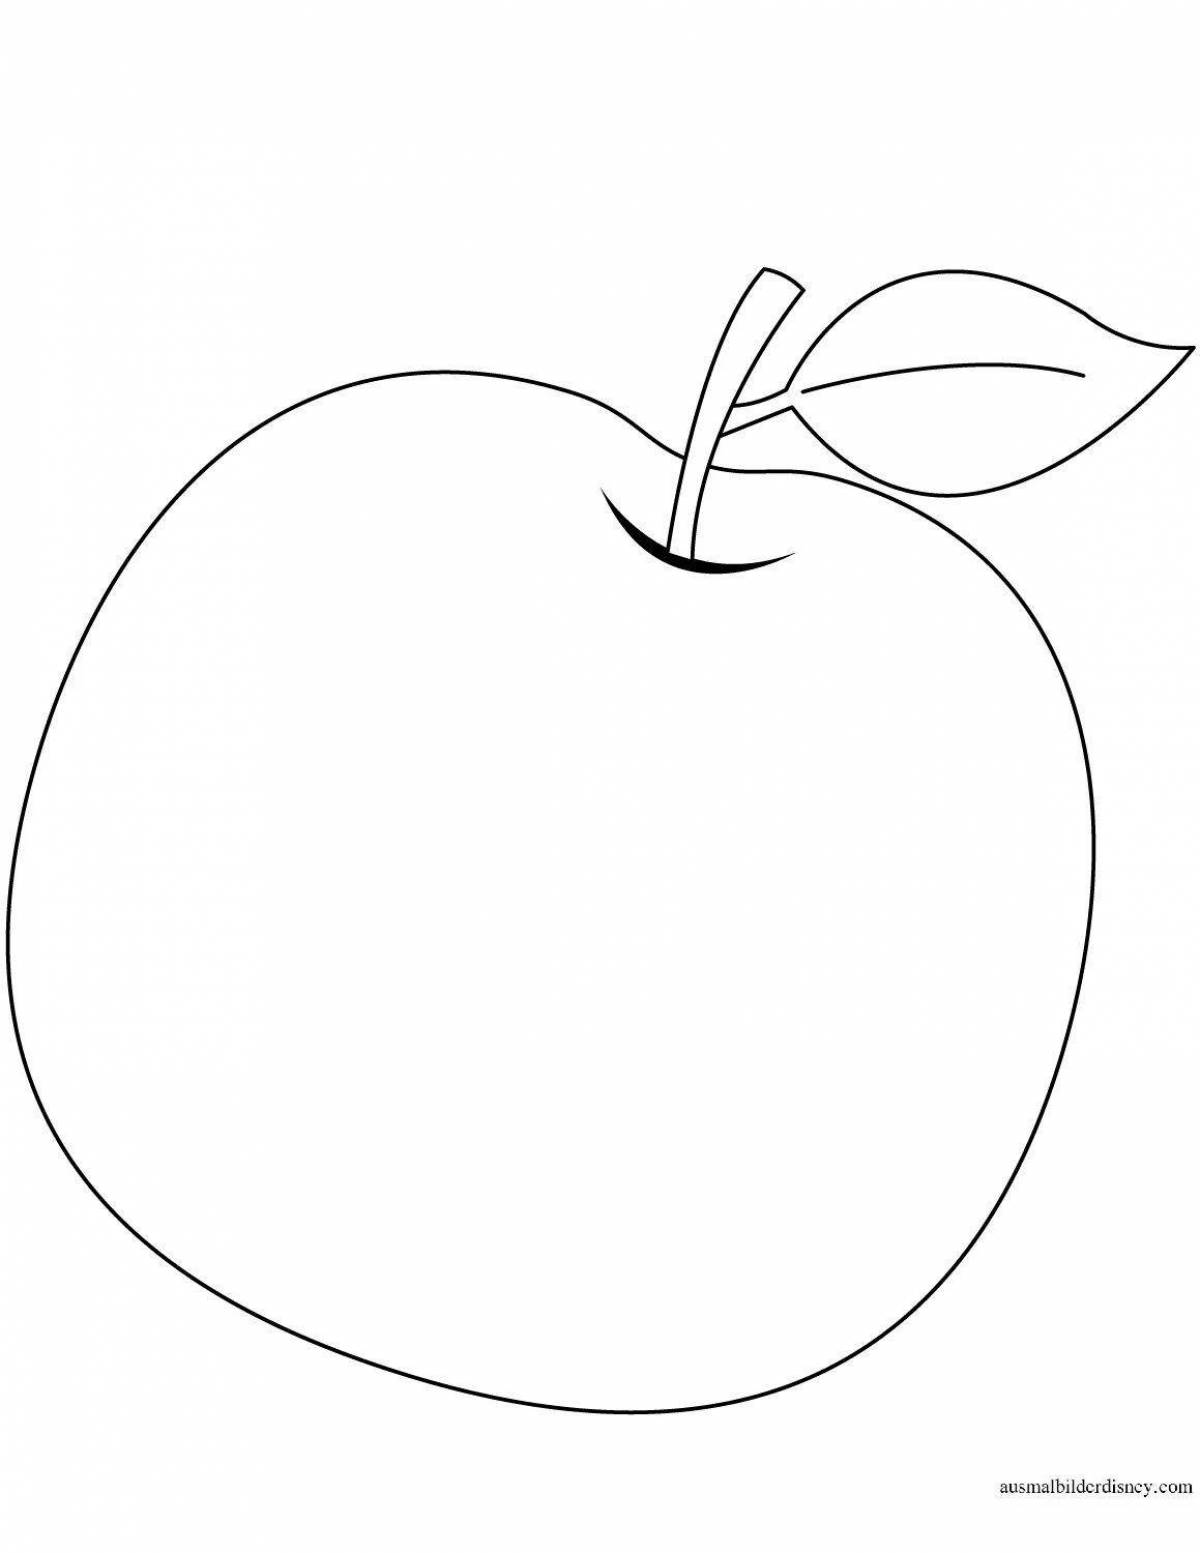 Раскраска гламурная яблочная груша